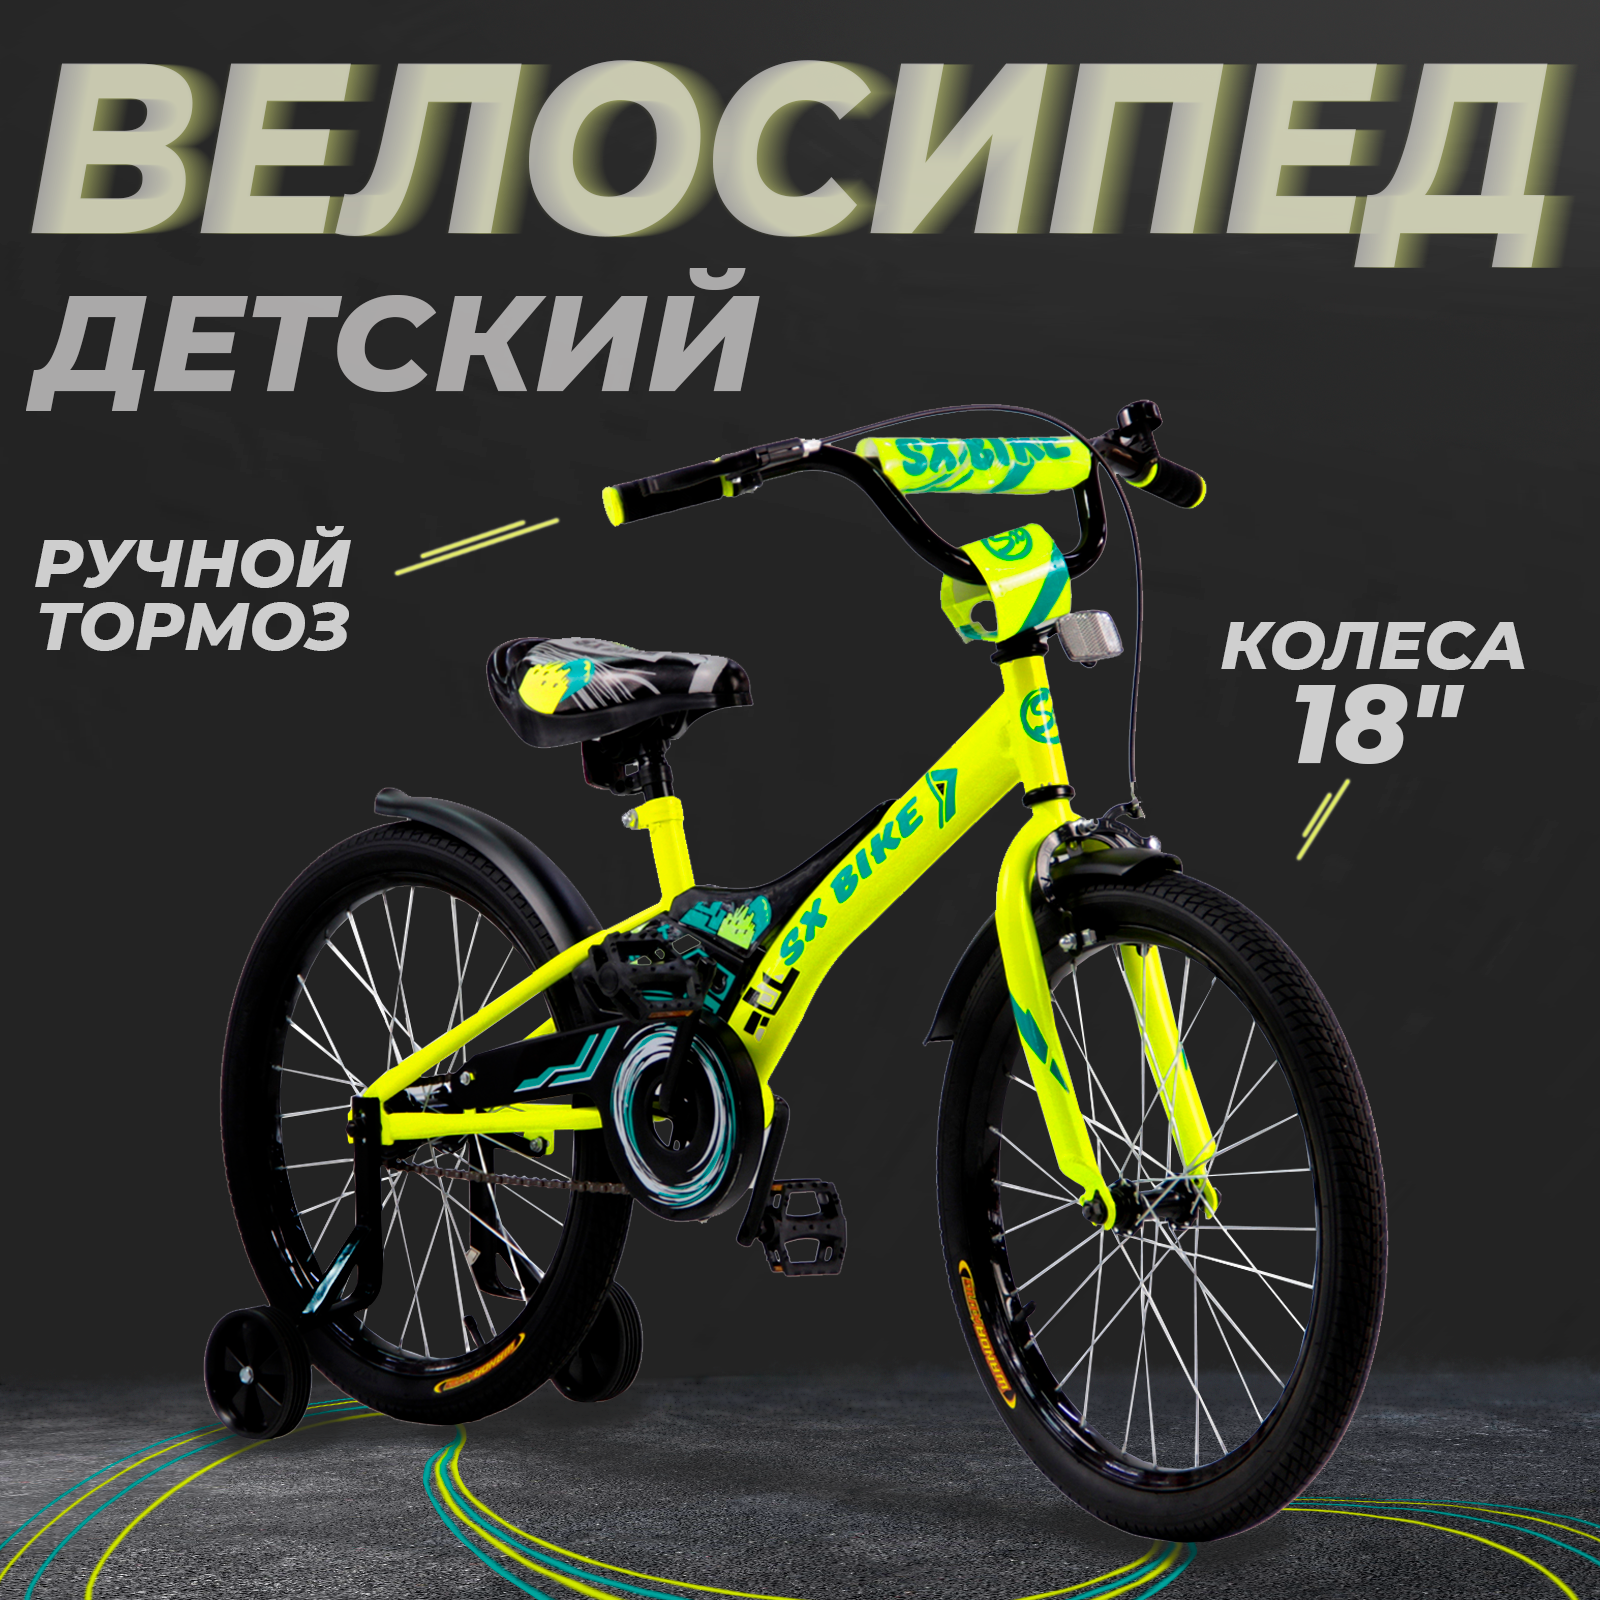 Велосипед детский Next 18" 2.0 зеленый, руч. тормоз